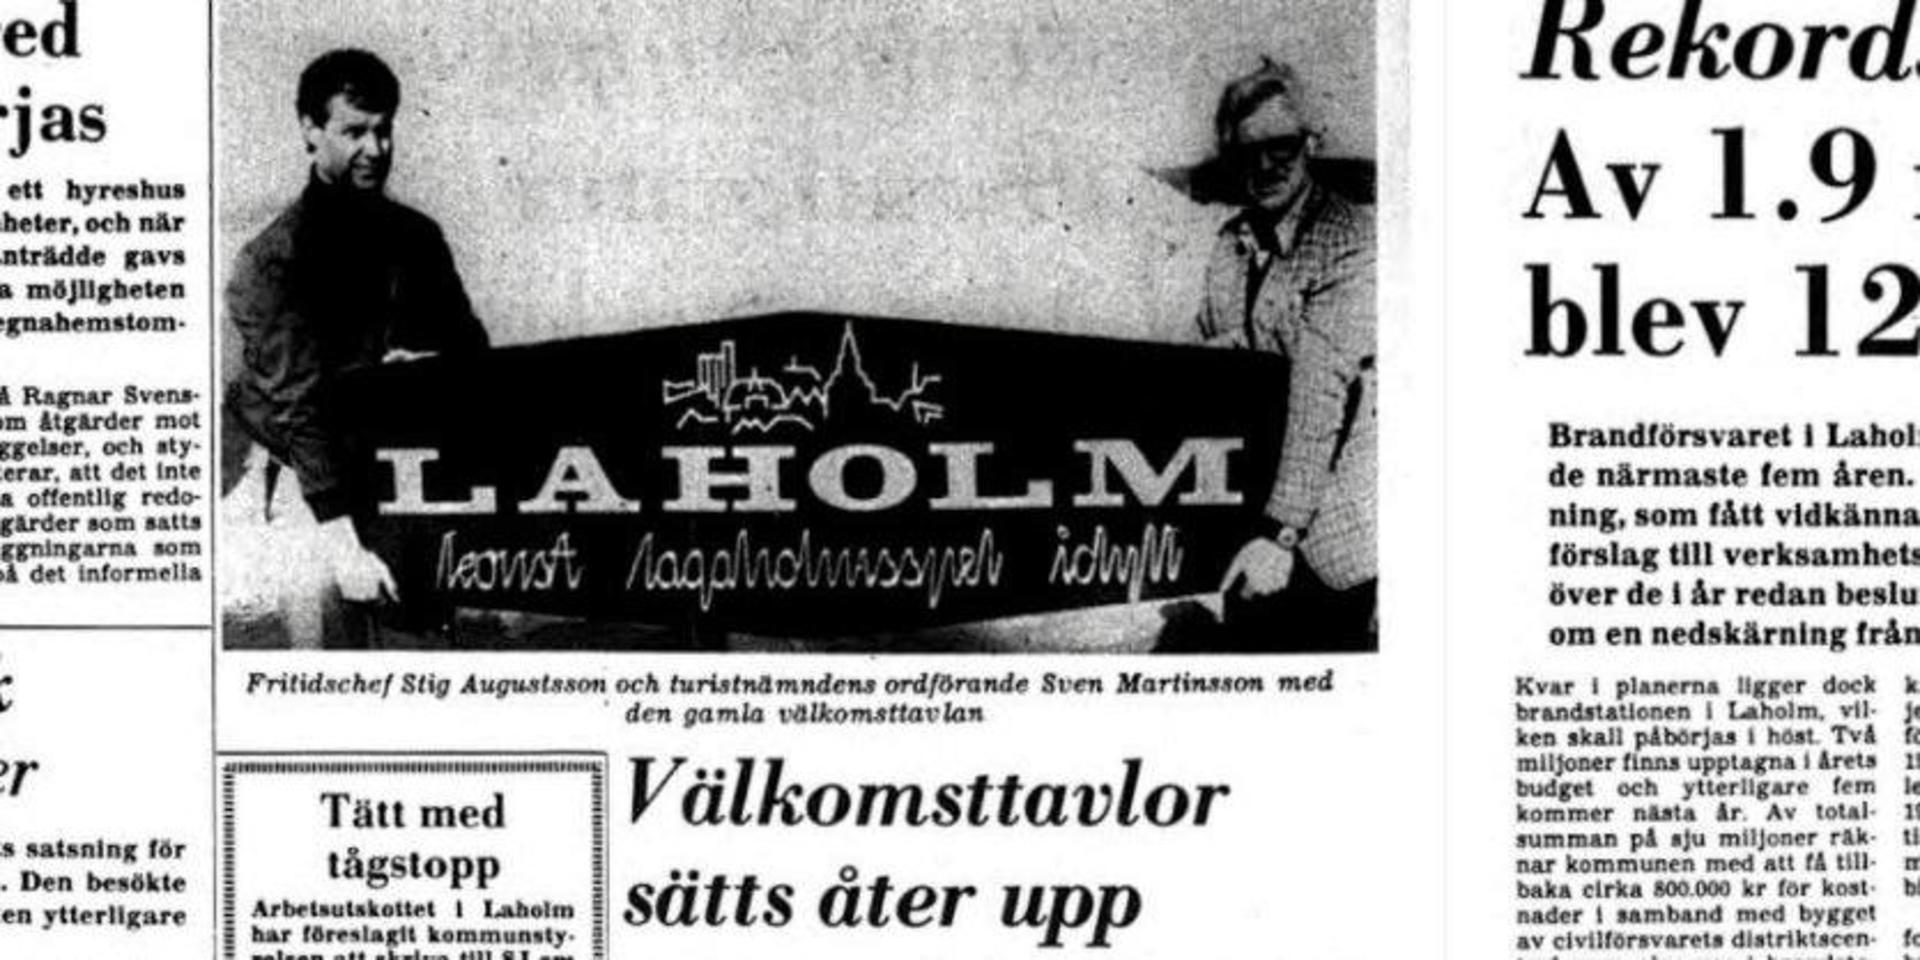 Hallandsposten 2 april 1980. Klippet visar att ordet som någon gång under de senaste 40 åren försvunnit är ”Lagaholmsspel”.